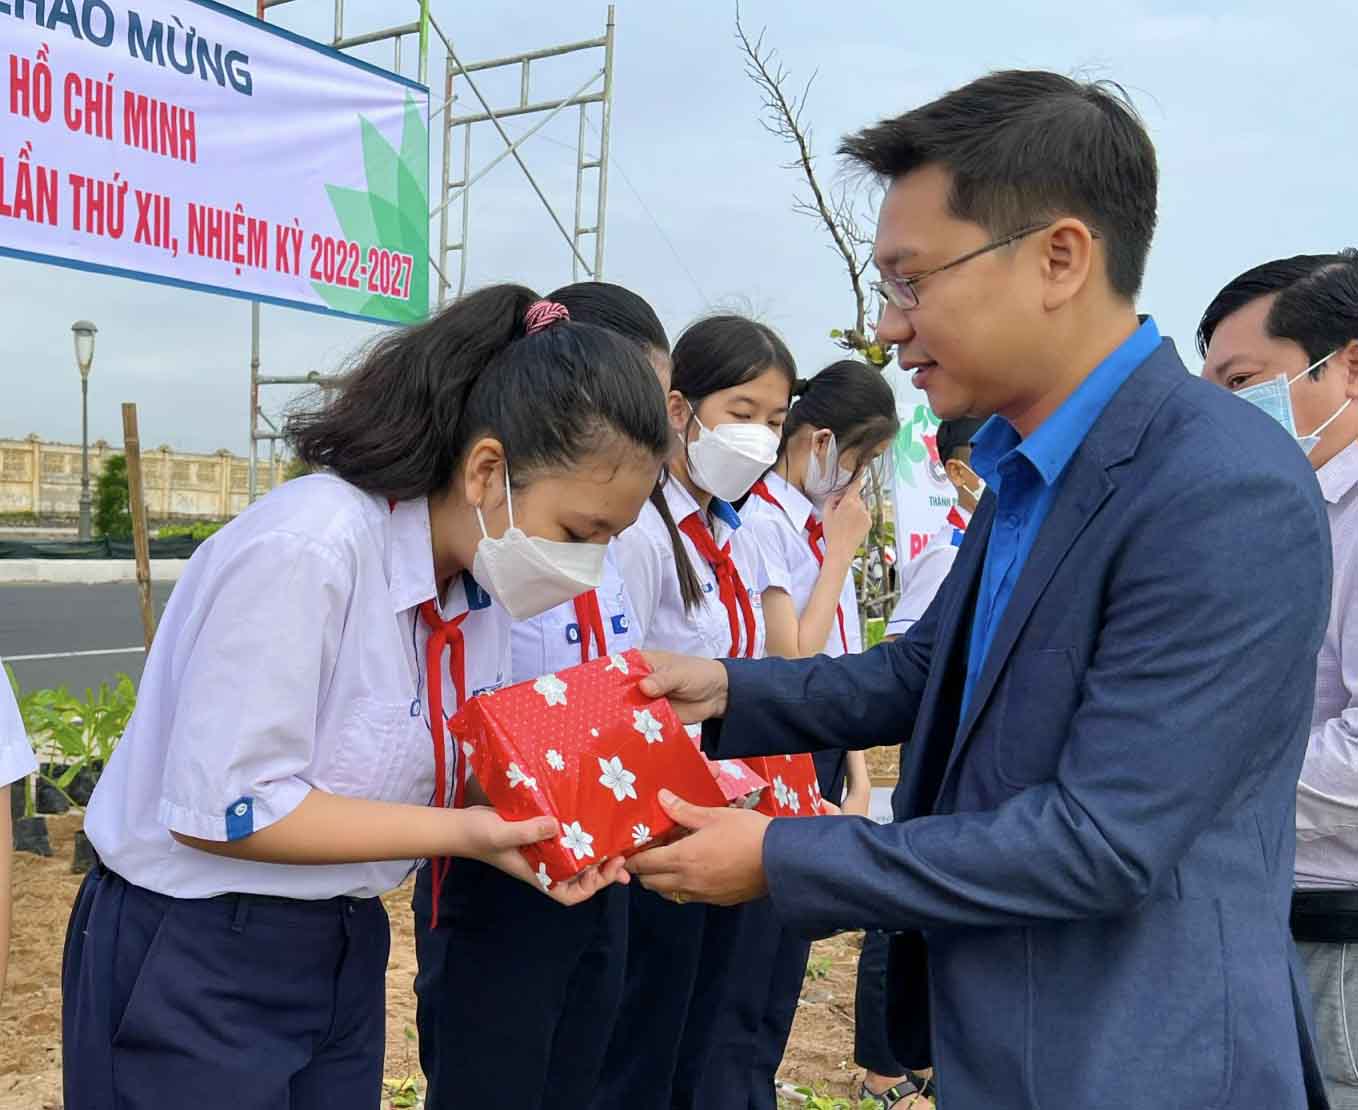 Đồng chí Nguyễn Huỳnh Bảo - Phó Bí thư Thành Đoàn Tuy Hòa trao quà cho học sinh có hoàn cảnh khó khăn trên địa bàn thành phố Tuy Hòa.